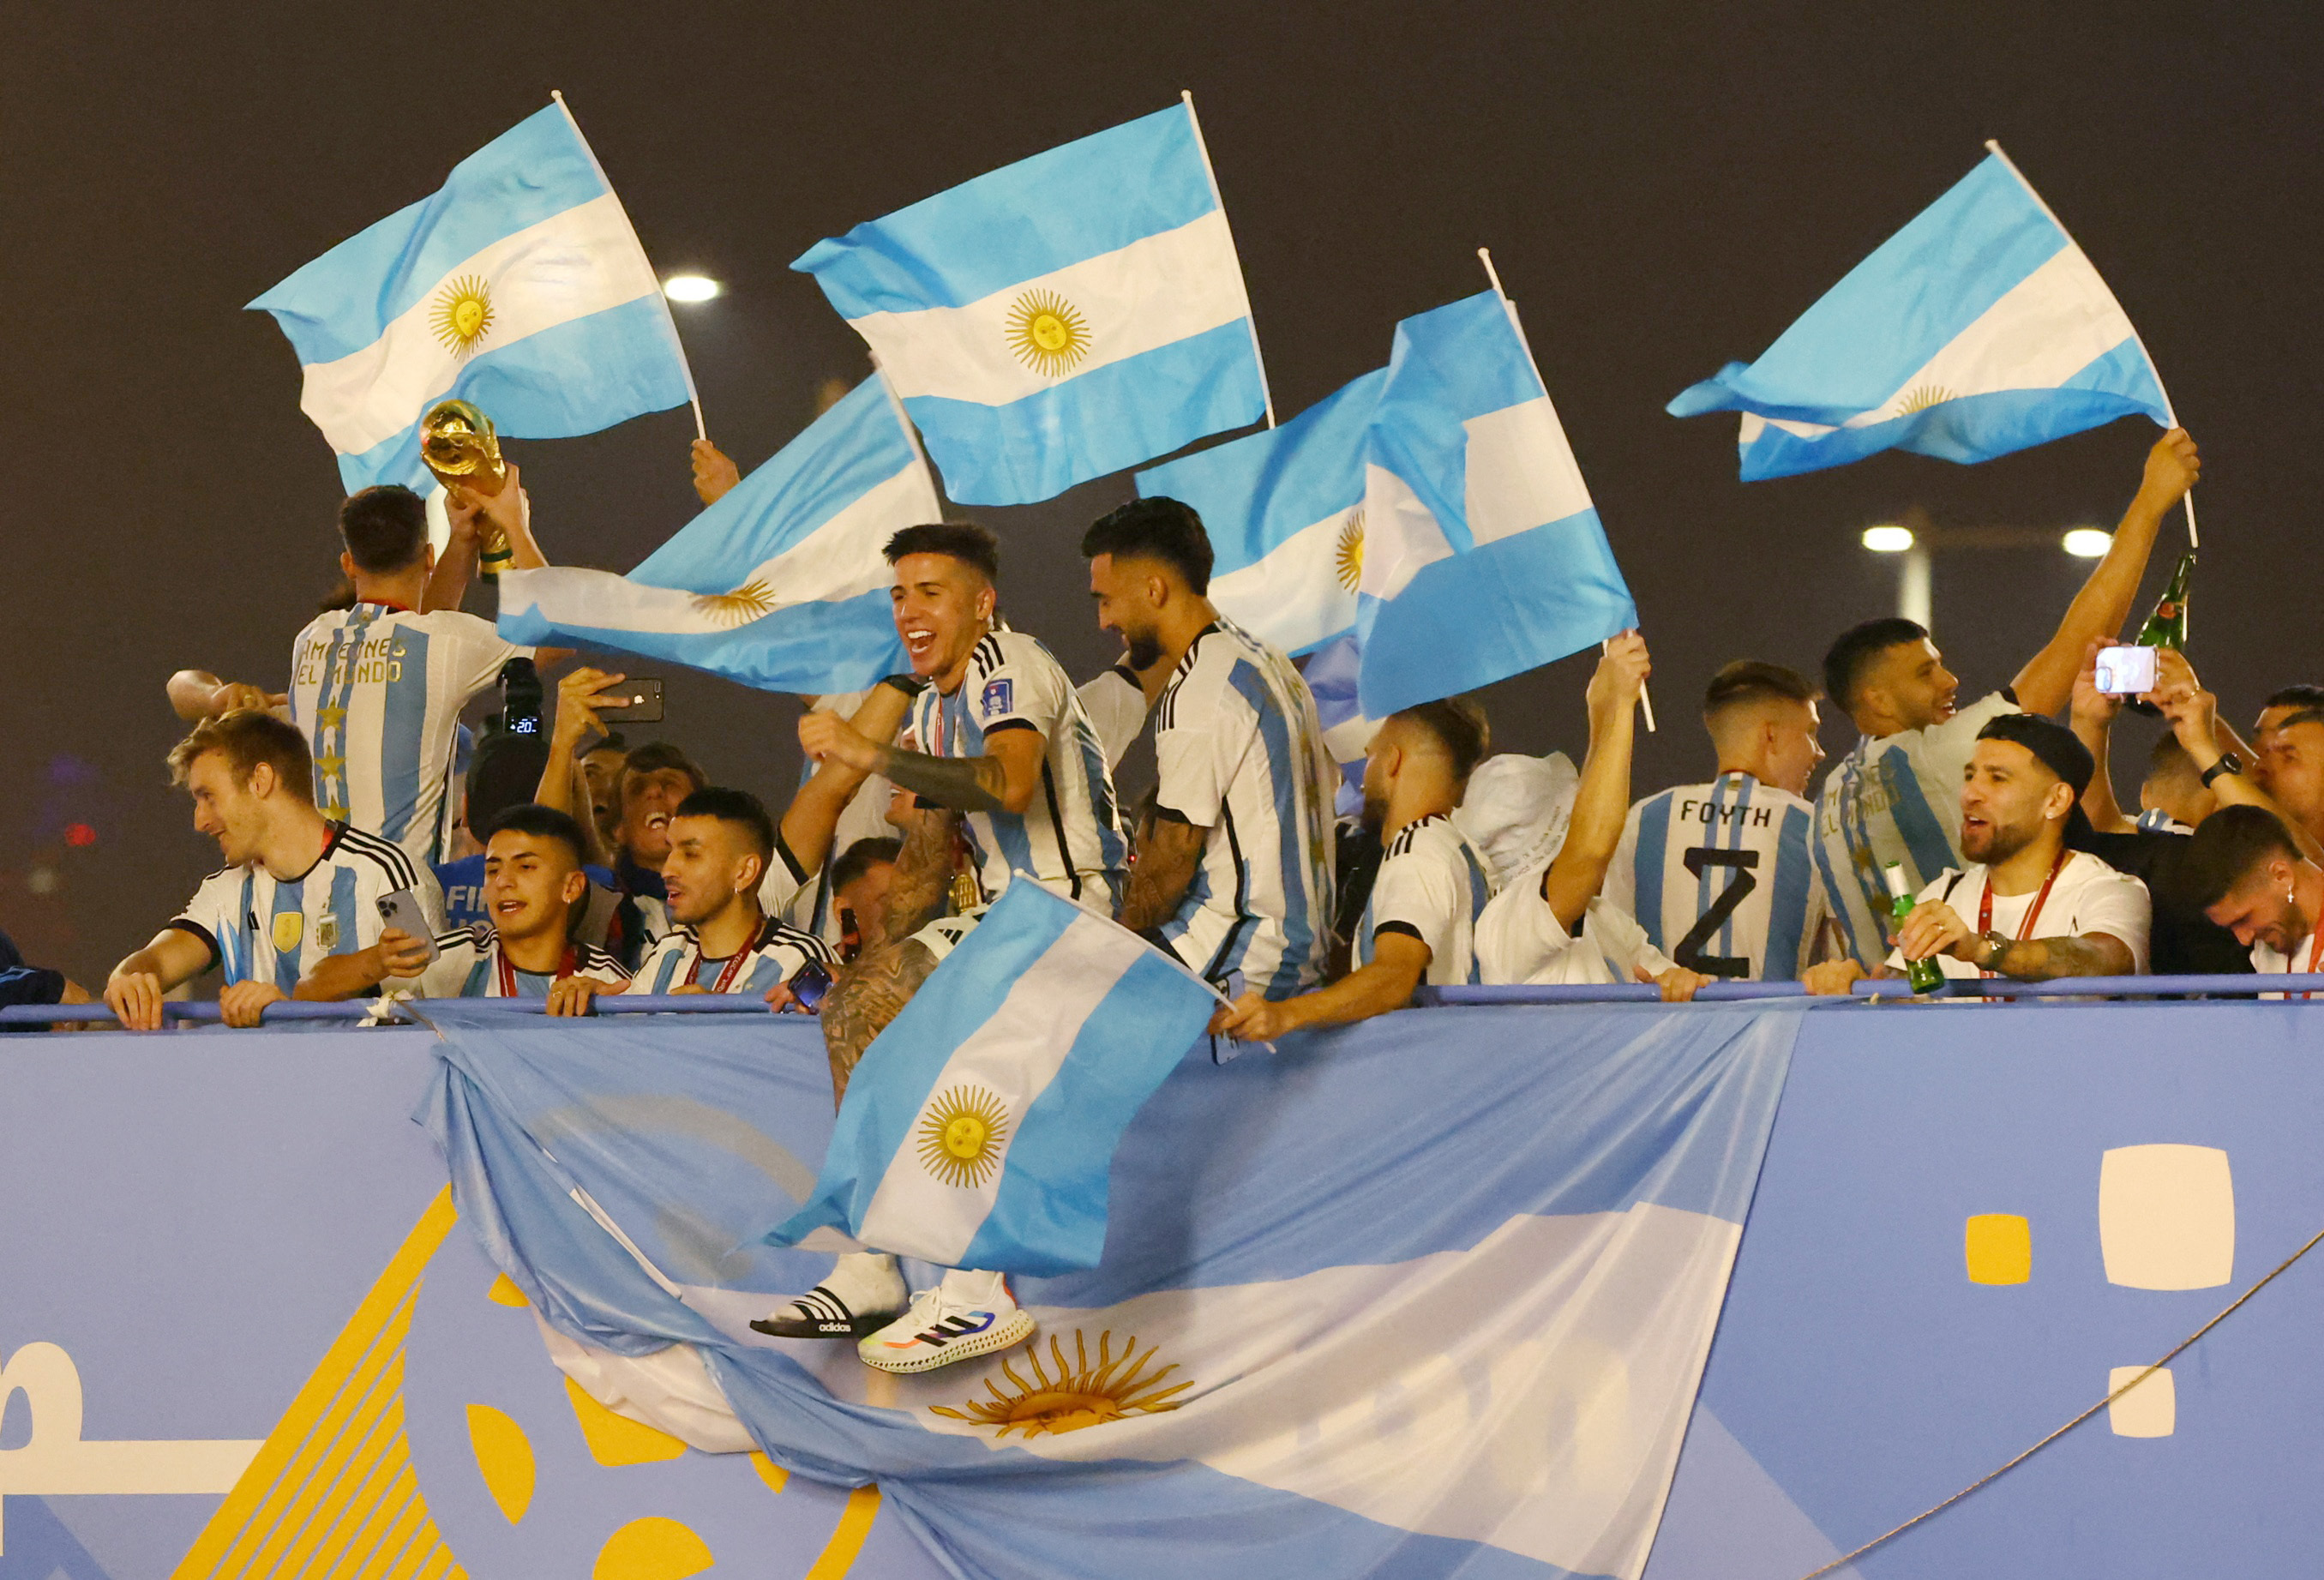 A la salida del estadio Lusail, los jugadores argentinos saludan a los simpatizantes con Enzo Fernández encabezando el festejo. El recorrido fue el primero de este tipo tras ganar el torneo, harán lo mismo cuando lleguen a Buenos Aires